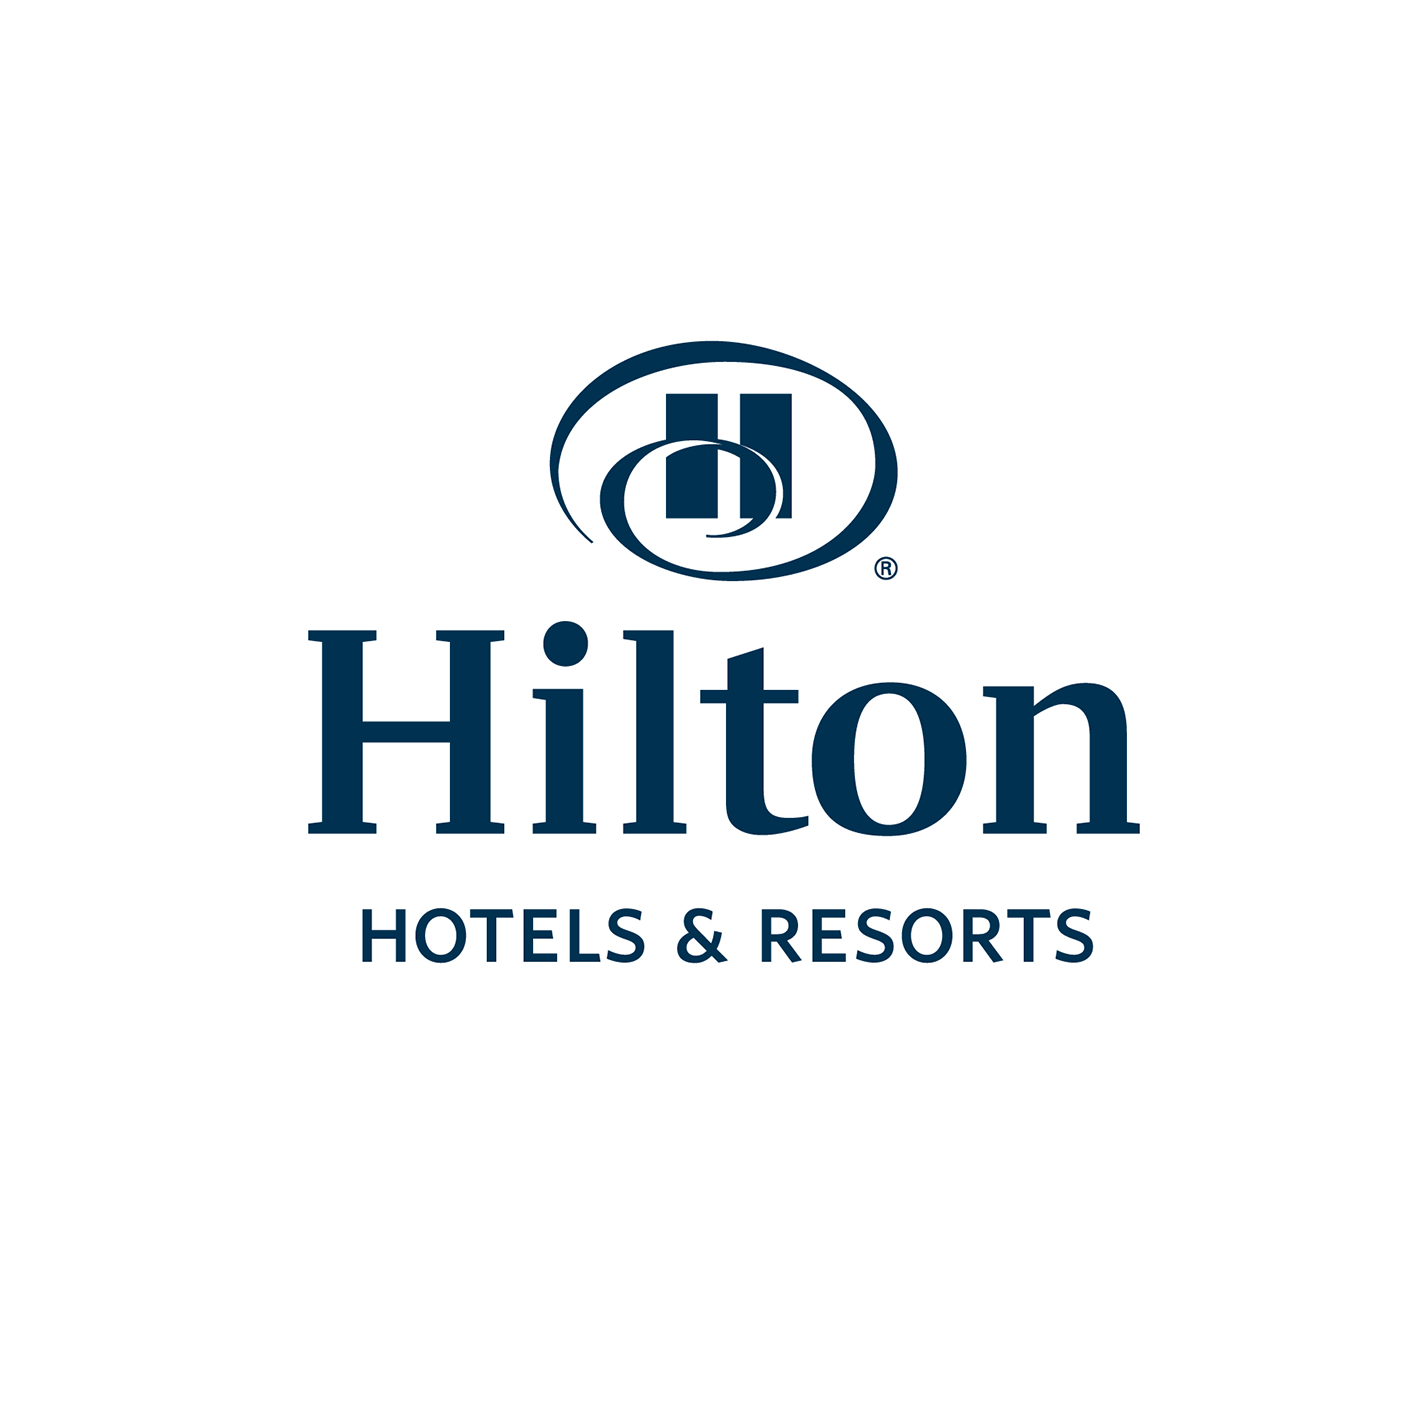 Hilton Hotels & Resorts.png